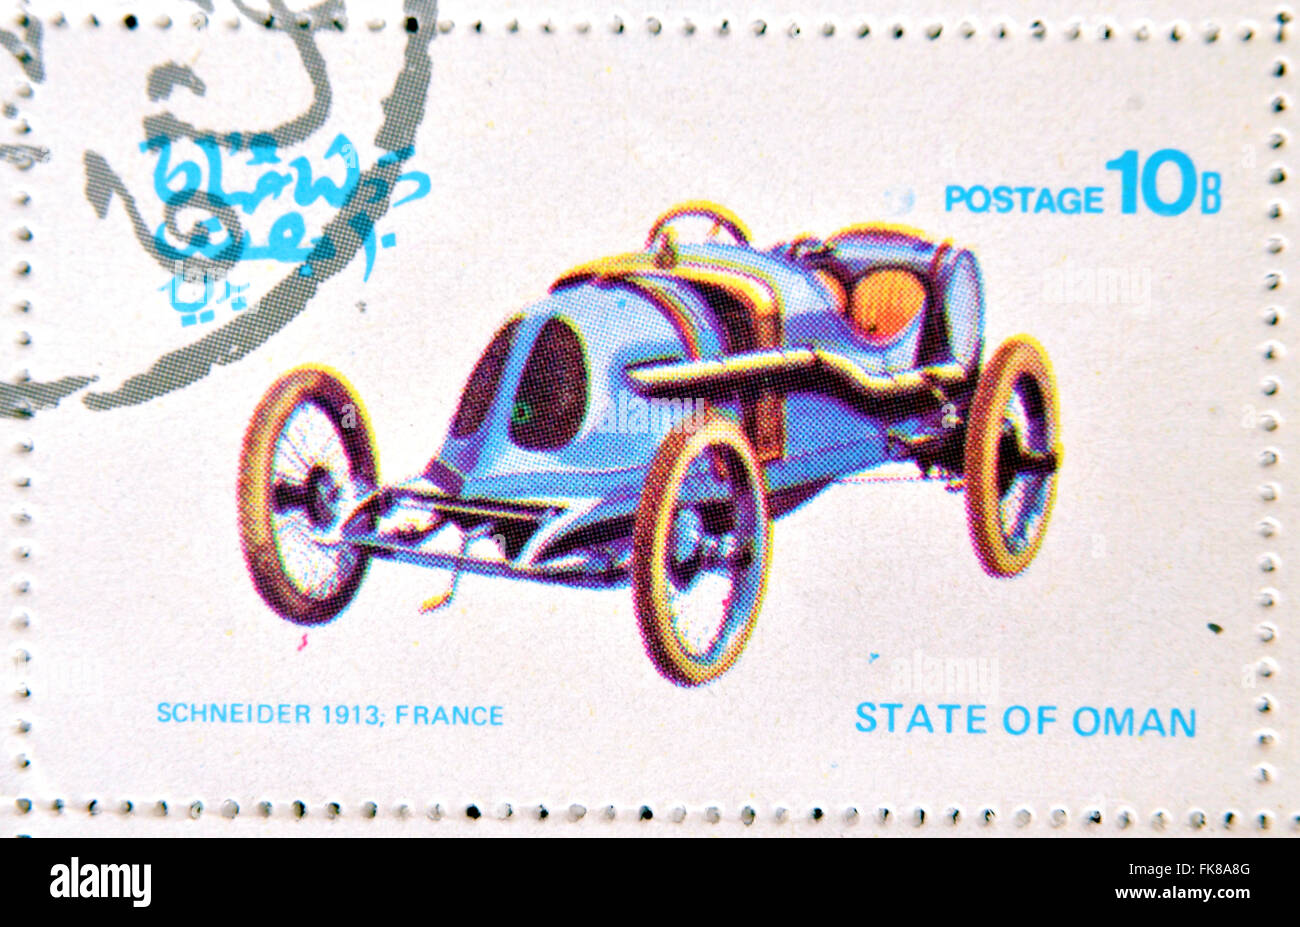 OMAN - circa 1977 : timbre imprimé dans la région d'Oman montre une vieille voiture, Schneider 1913, France, vers 1977 Banque D'Images